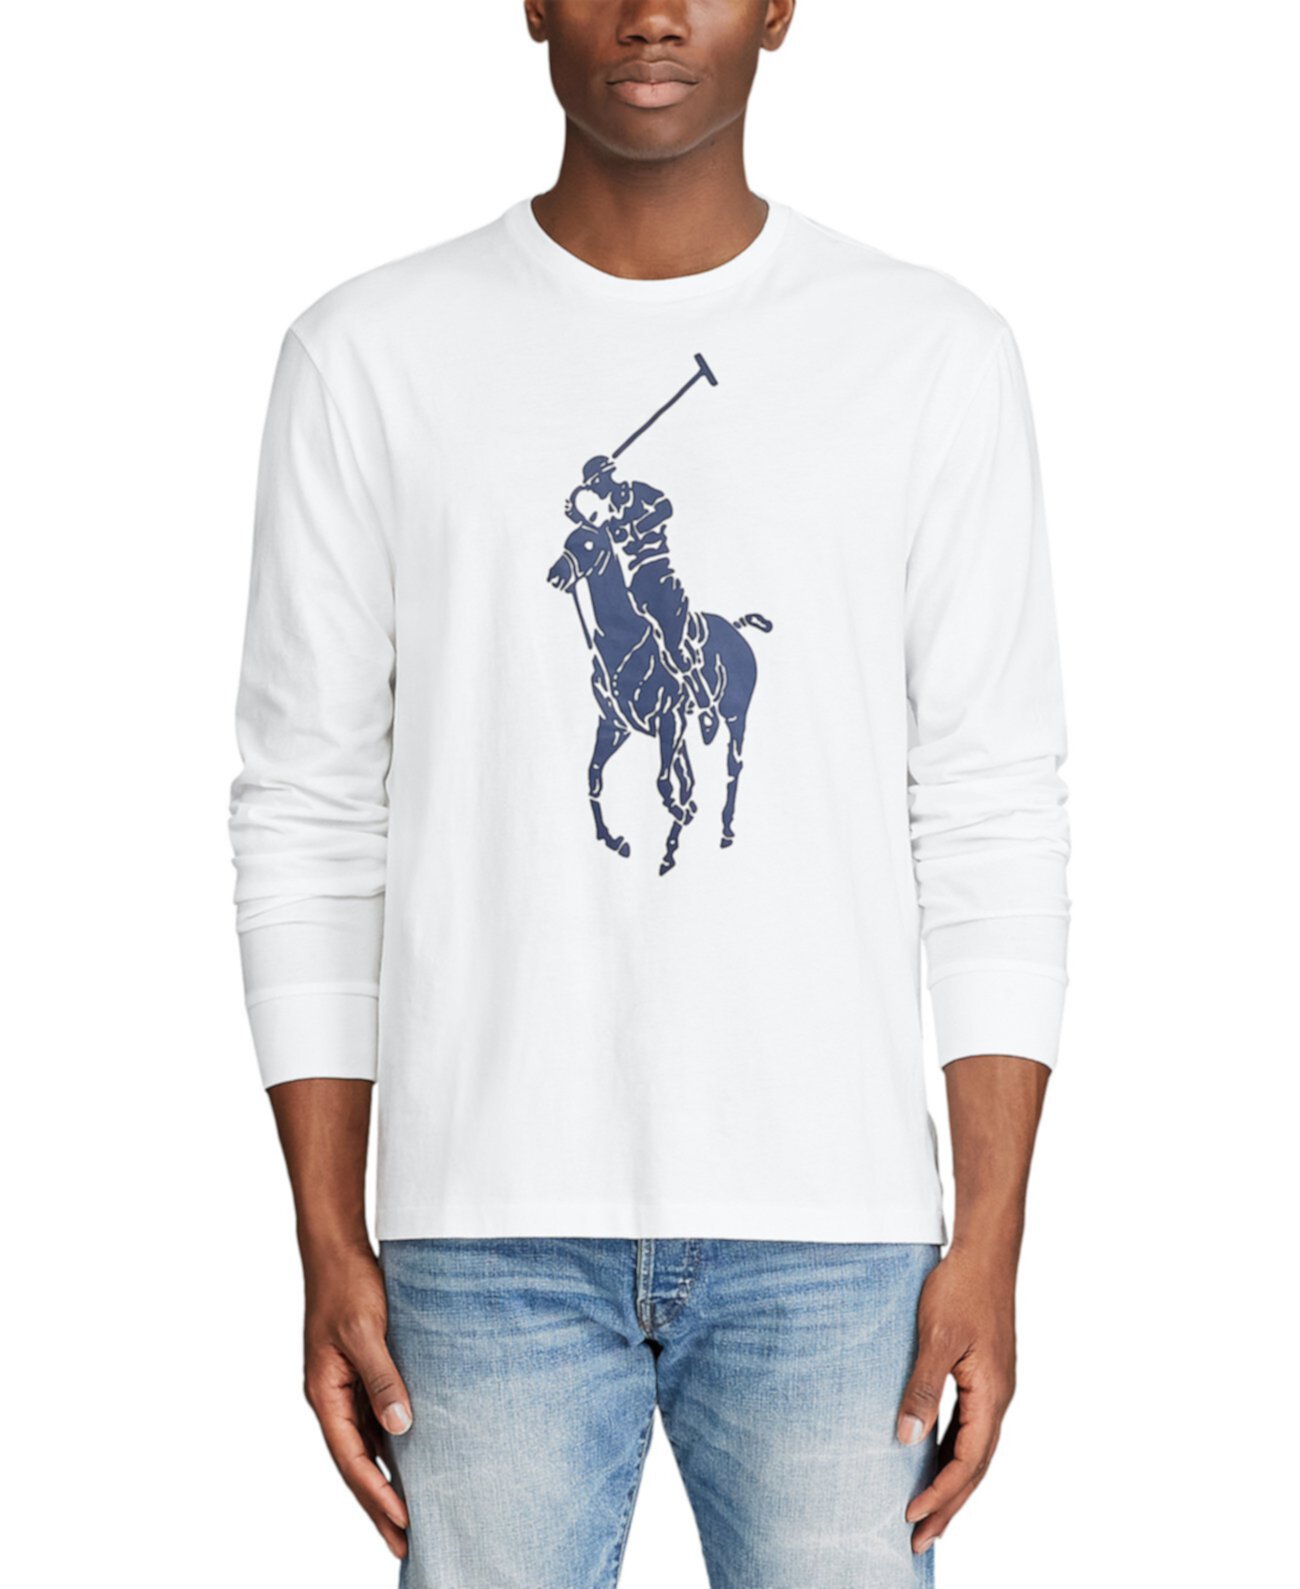 Мужская классическая футболка Big Pony Ralph Lauren